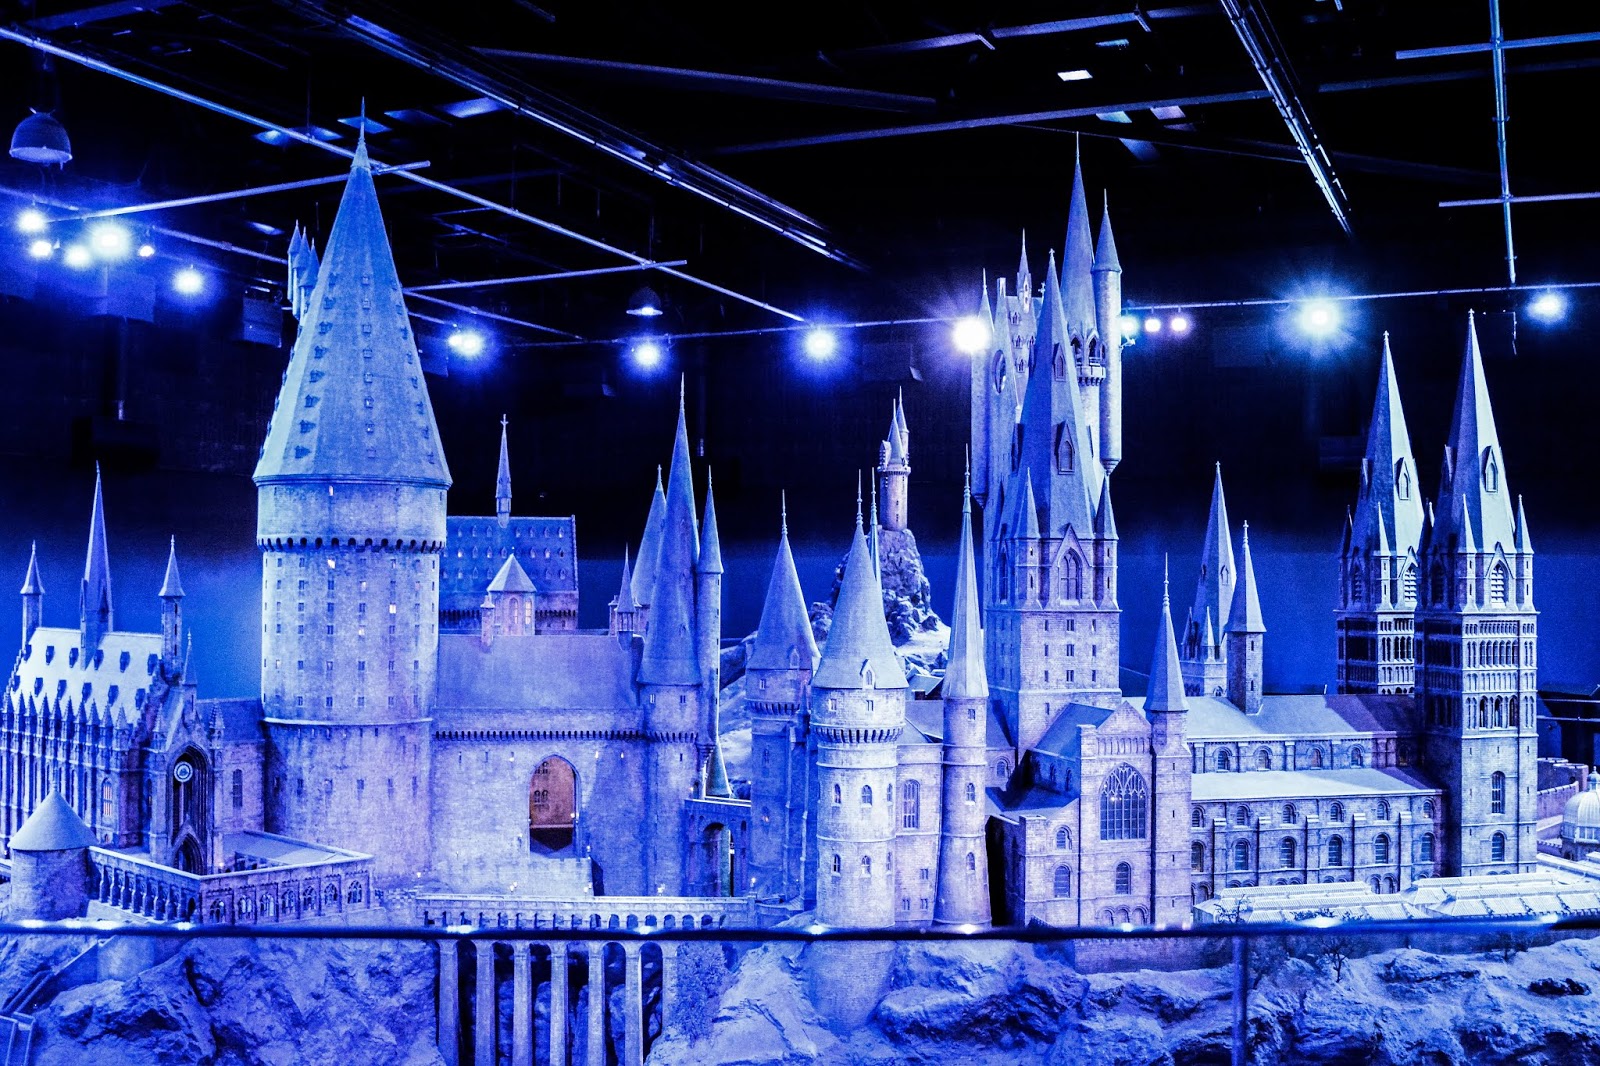 Harry Potter Studio Tour Hogwarts Castle